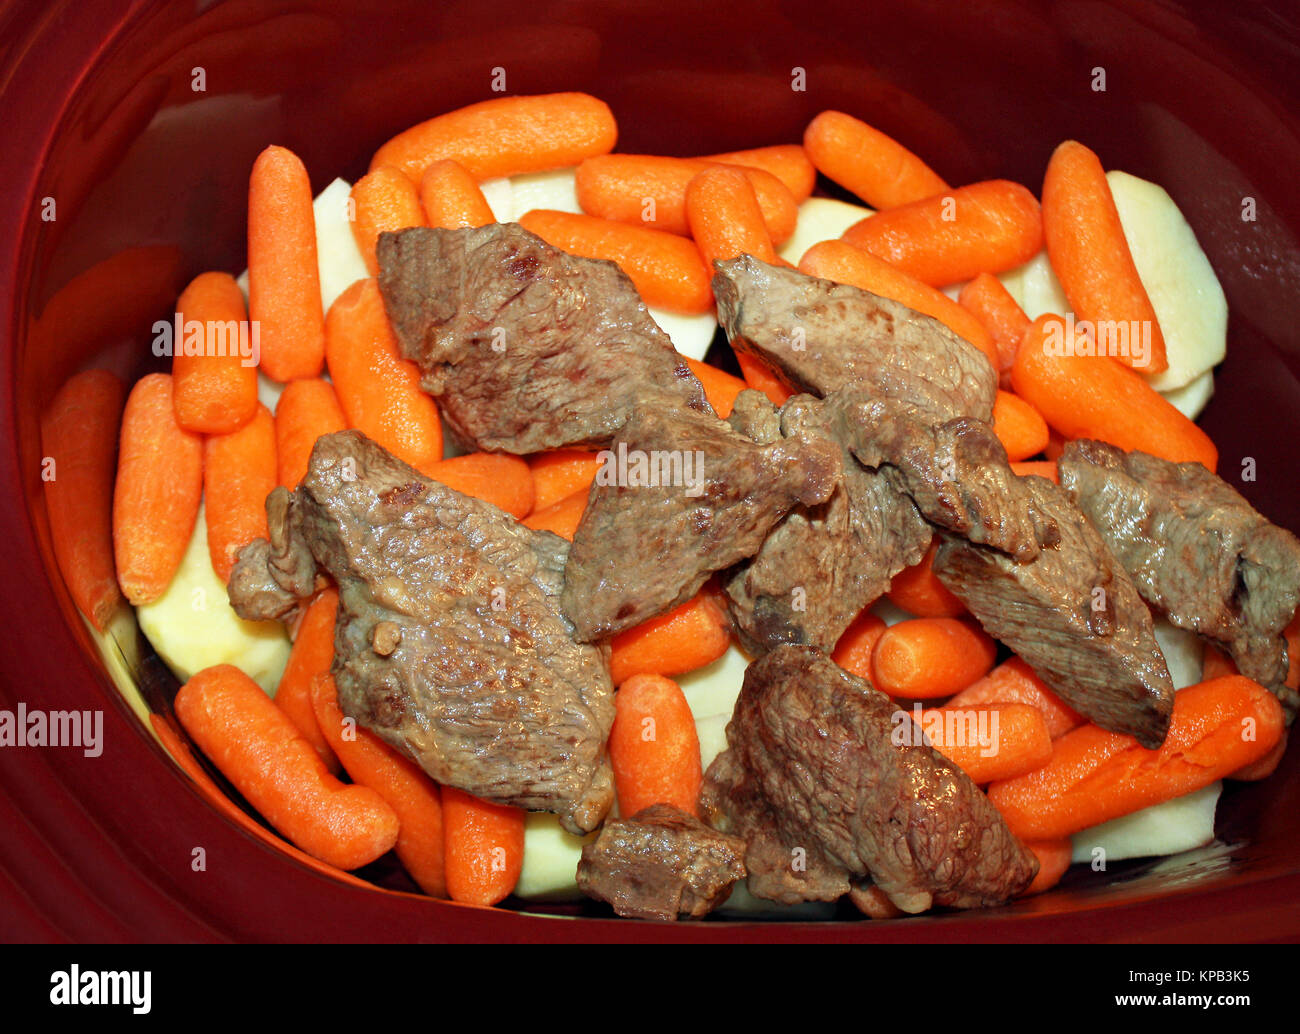 Strati di fettine di patate bianche, pelati mini baby carote e rosolato cottura carni bovine in uno slow cooker Foto Stock